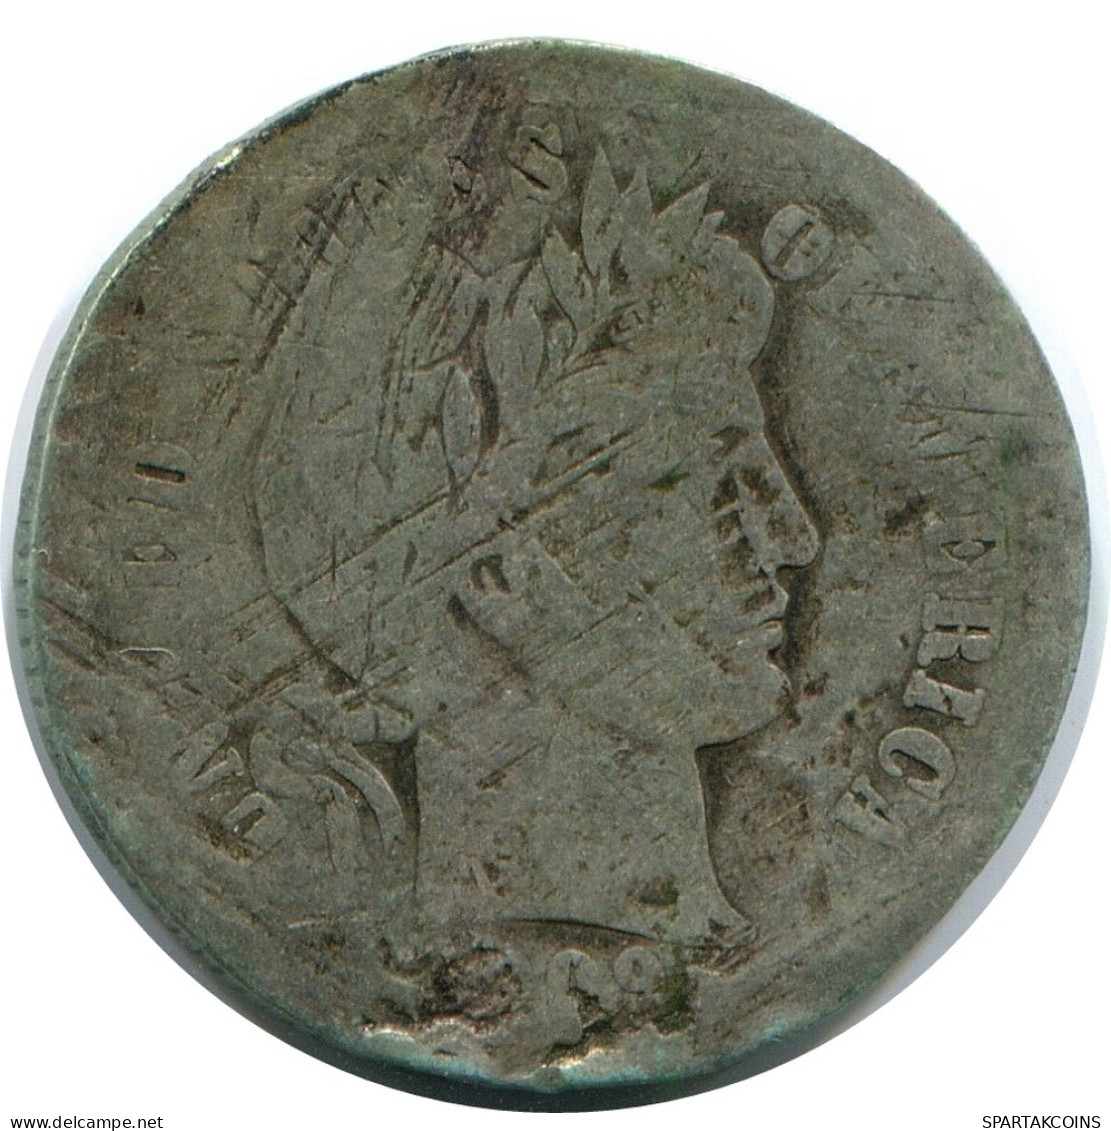 10 CENTS 1909 USA SILVER Coin #AR965.U - 2, 3 & 20 Cent